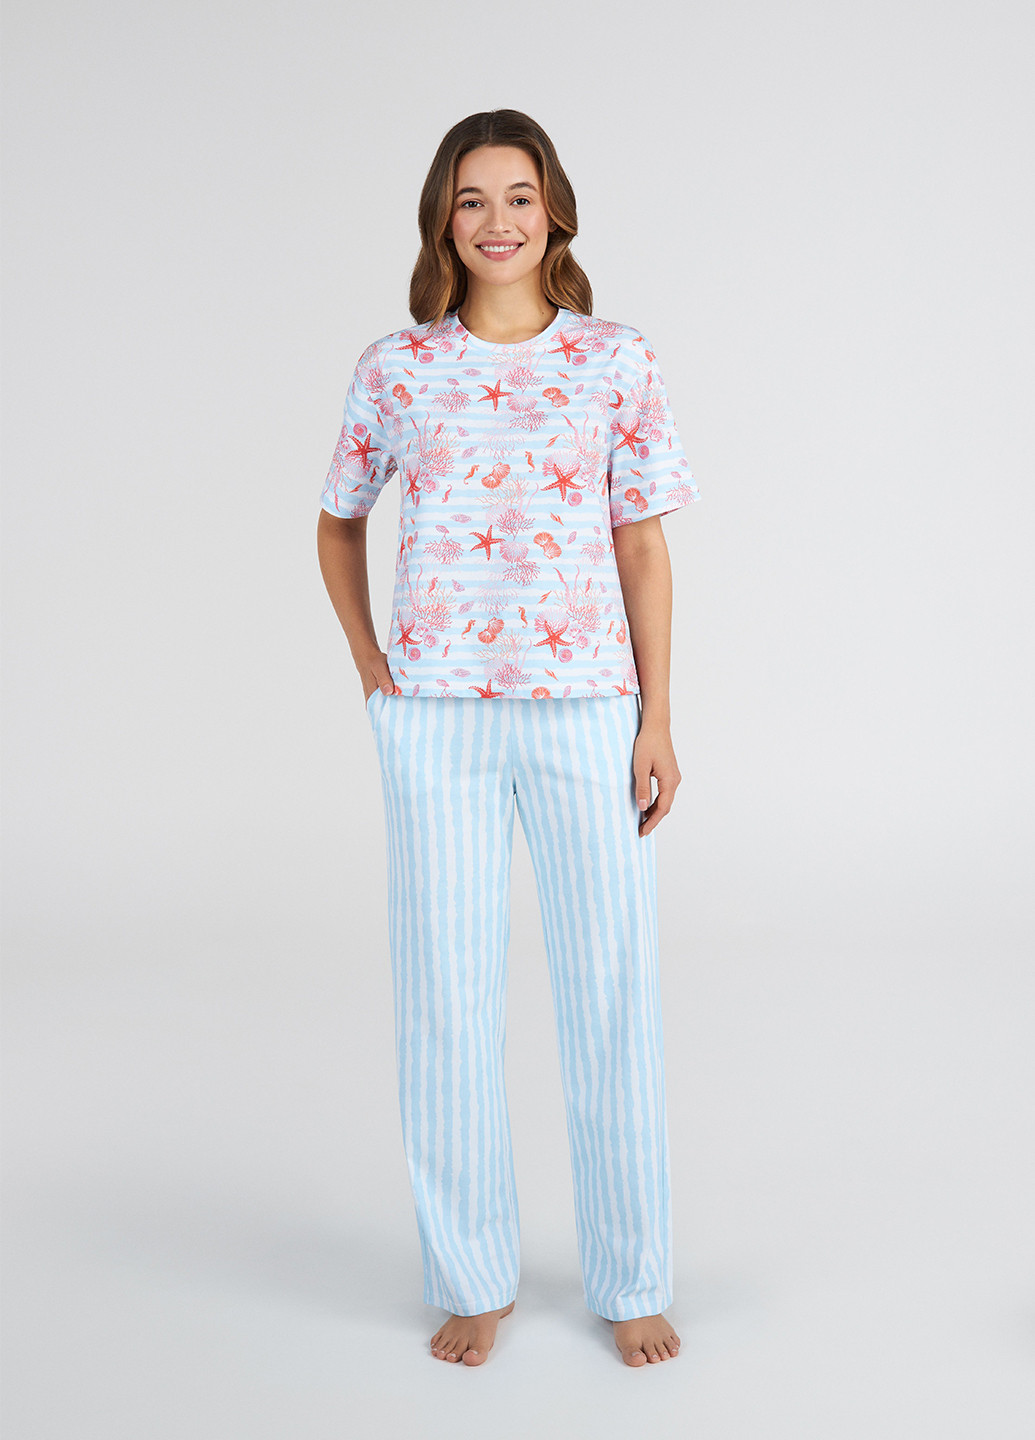 Голубая всесезон пижама (футболка, брюки) футболка + брюки Ellen